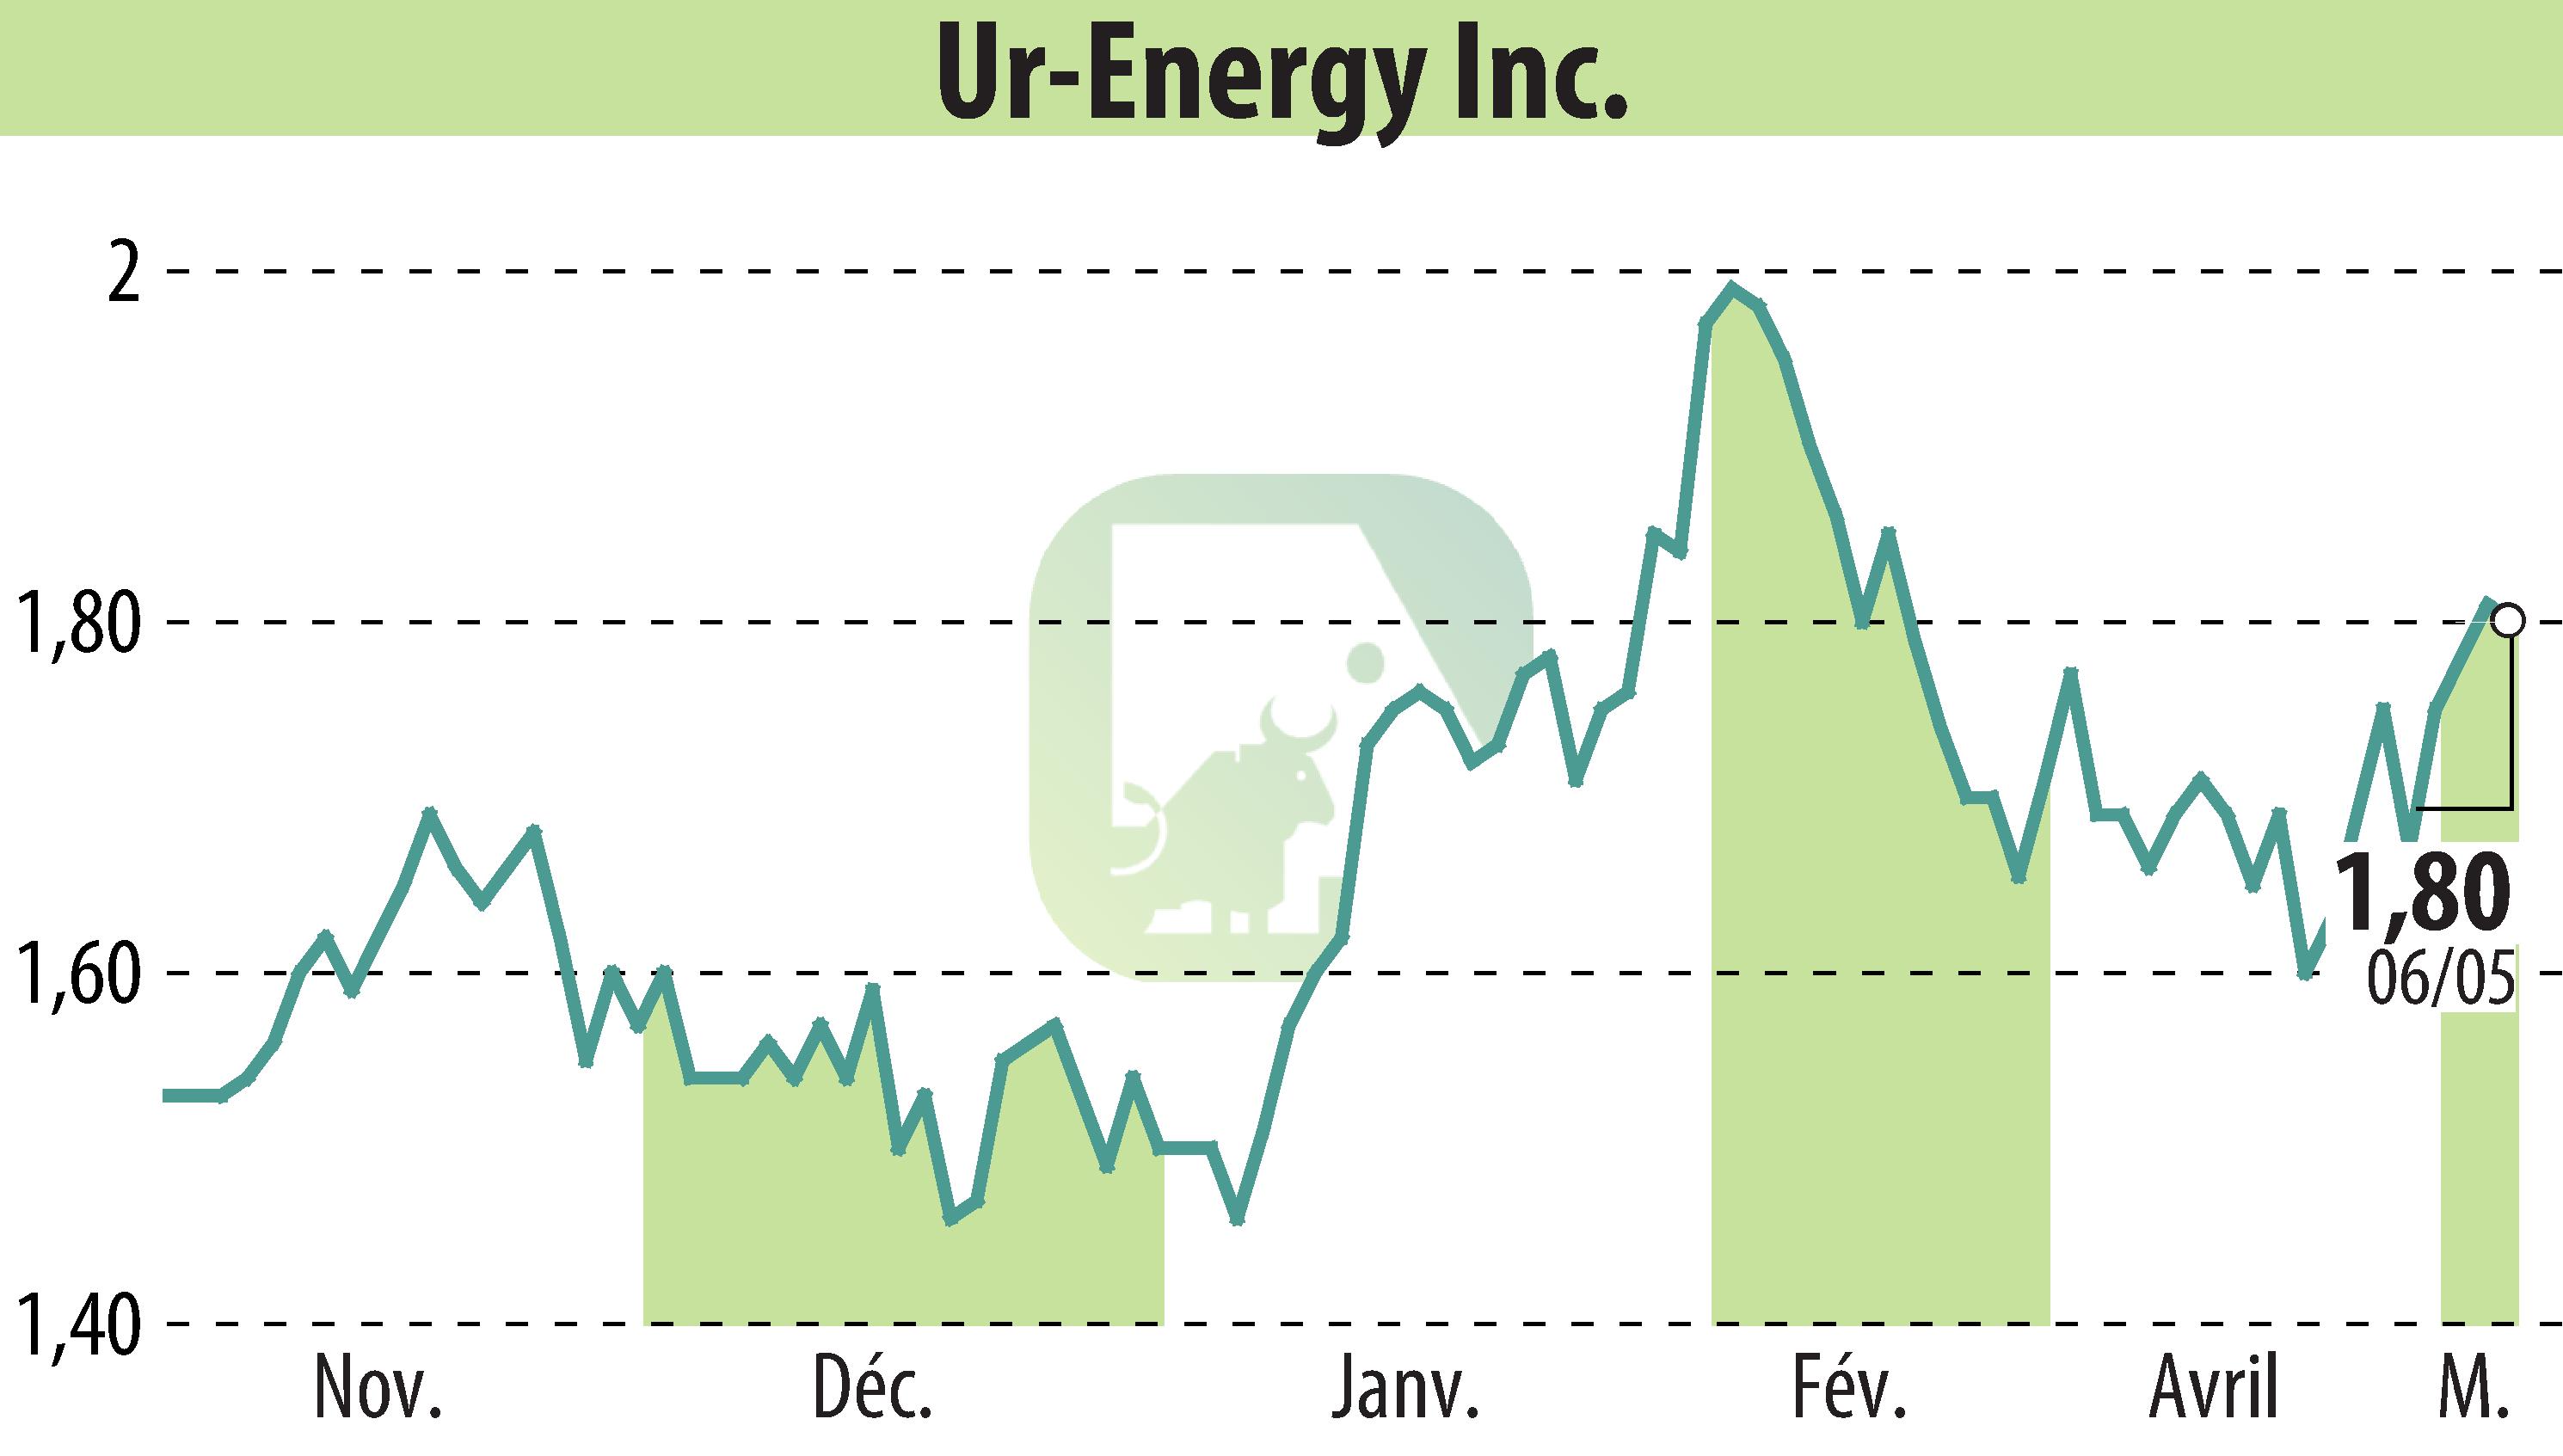 Graphique de l'évolution du cours de l'action Ur-Energy Inc. (EBR:URG).